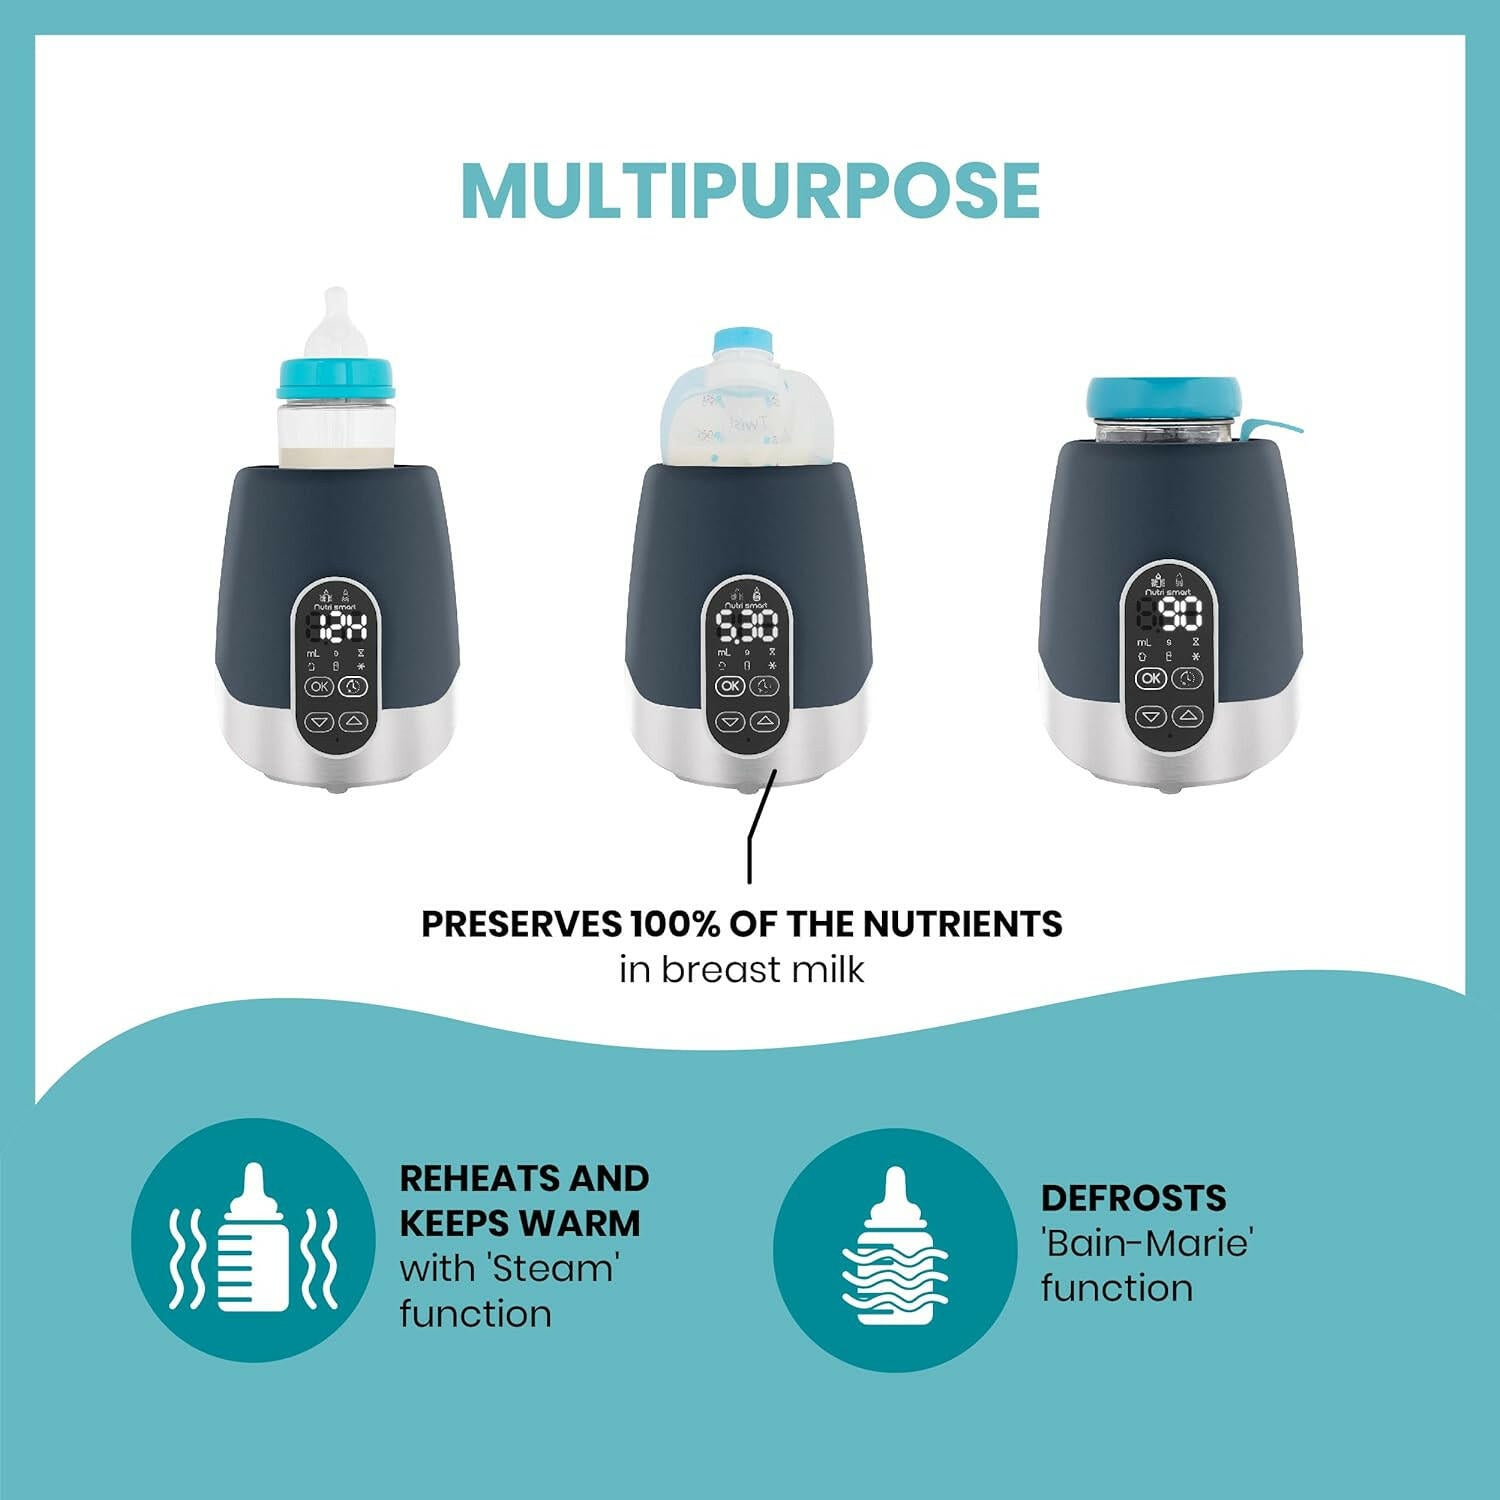 Babymoov NutriSmart Car/Home Bottle Warmer